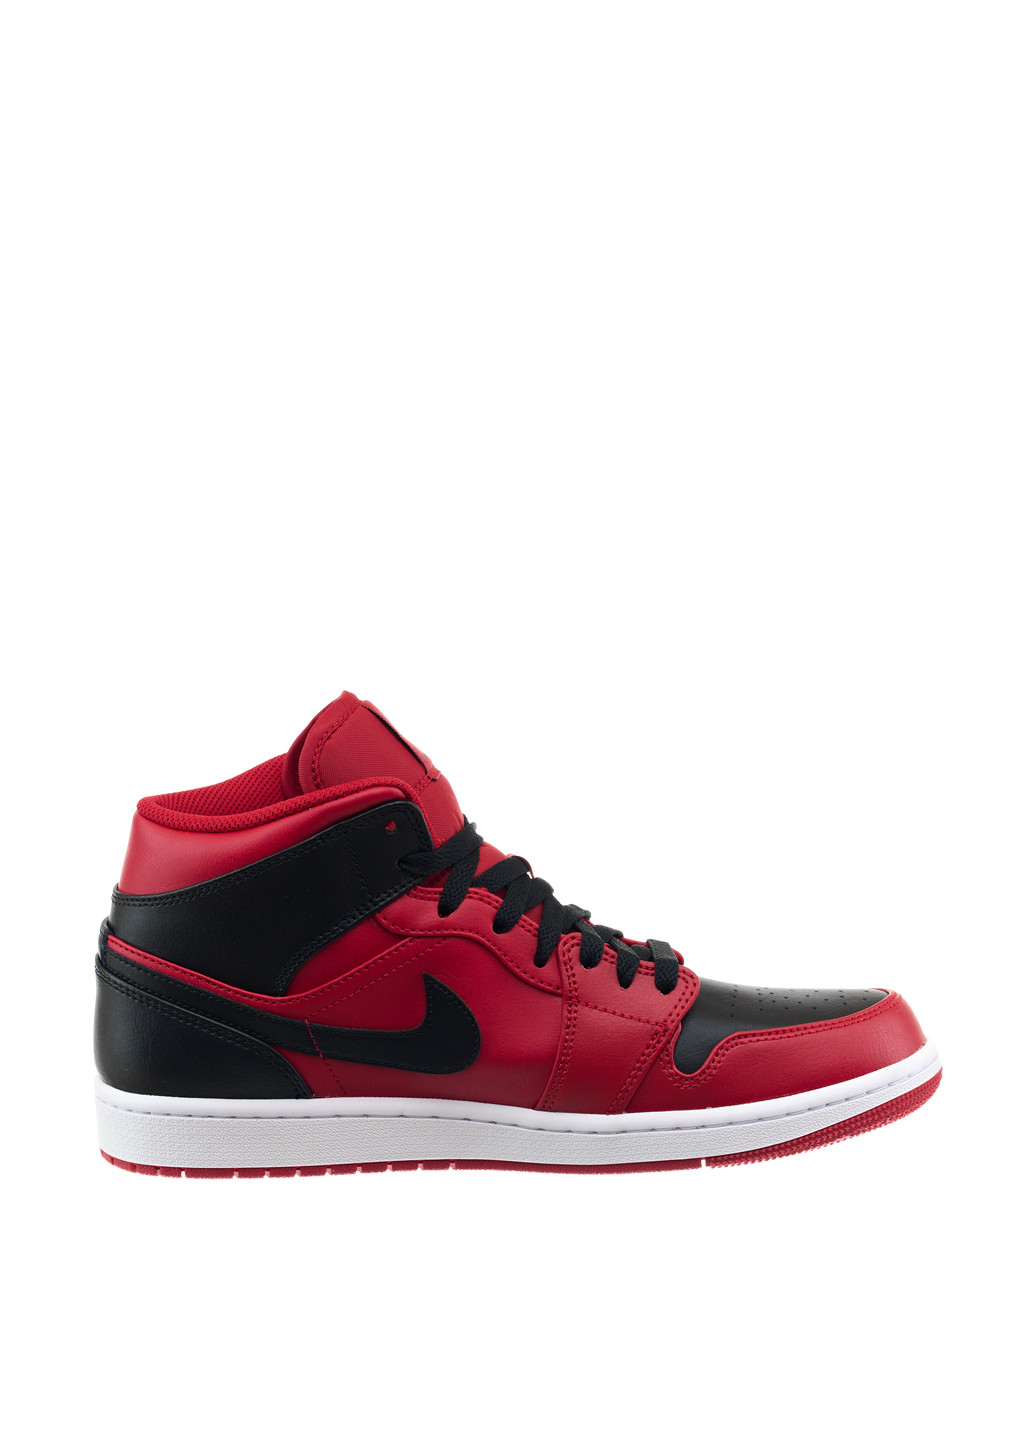 Красные демисезонные кроссовки 554724-660_2024 Jordan 1 MID